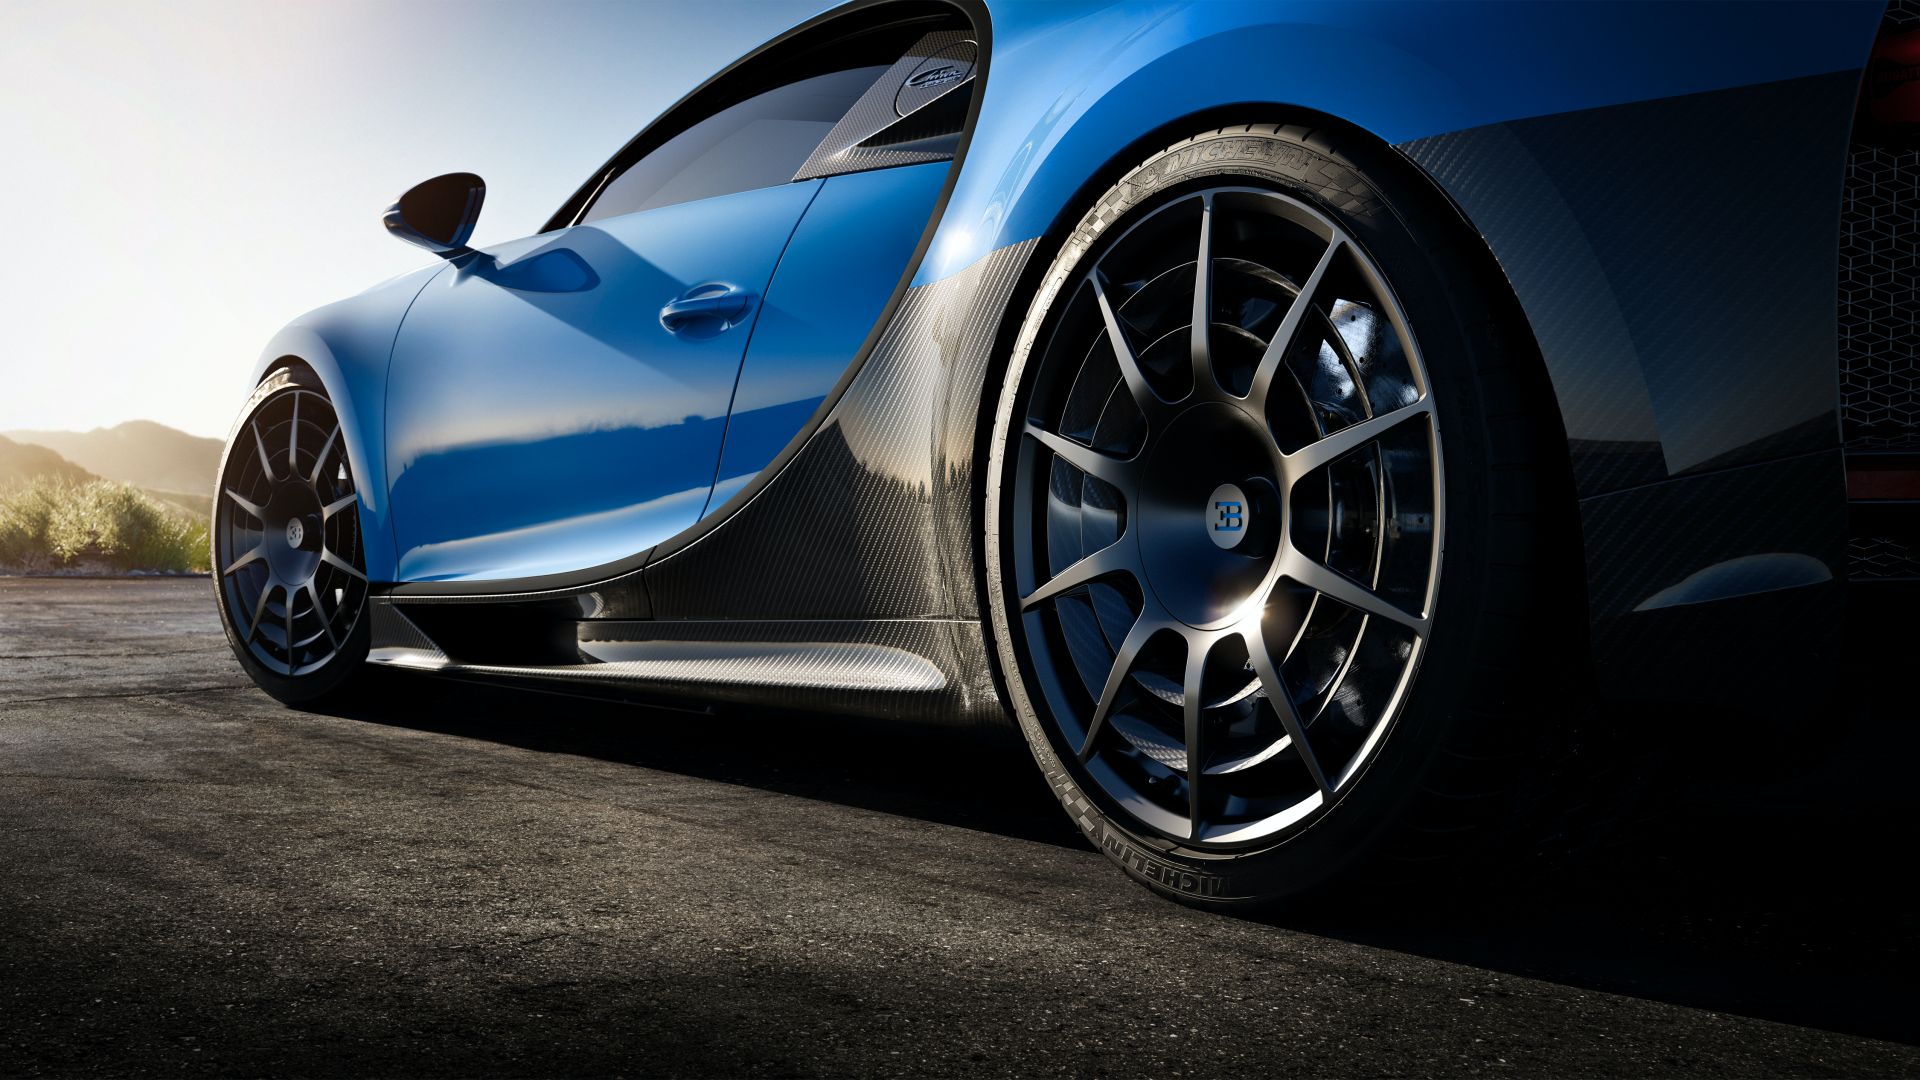 Ra mắt xe thời Covid-19: Dàn lãnh đạo Bugatti chào hàng siêu phẩm Chiron Pur Sport mới - Ảnh 5.